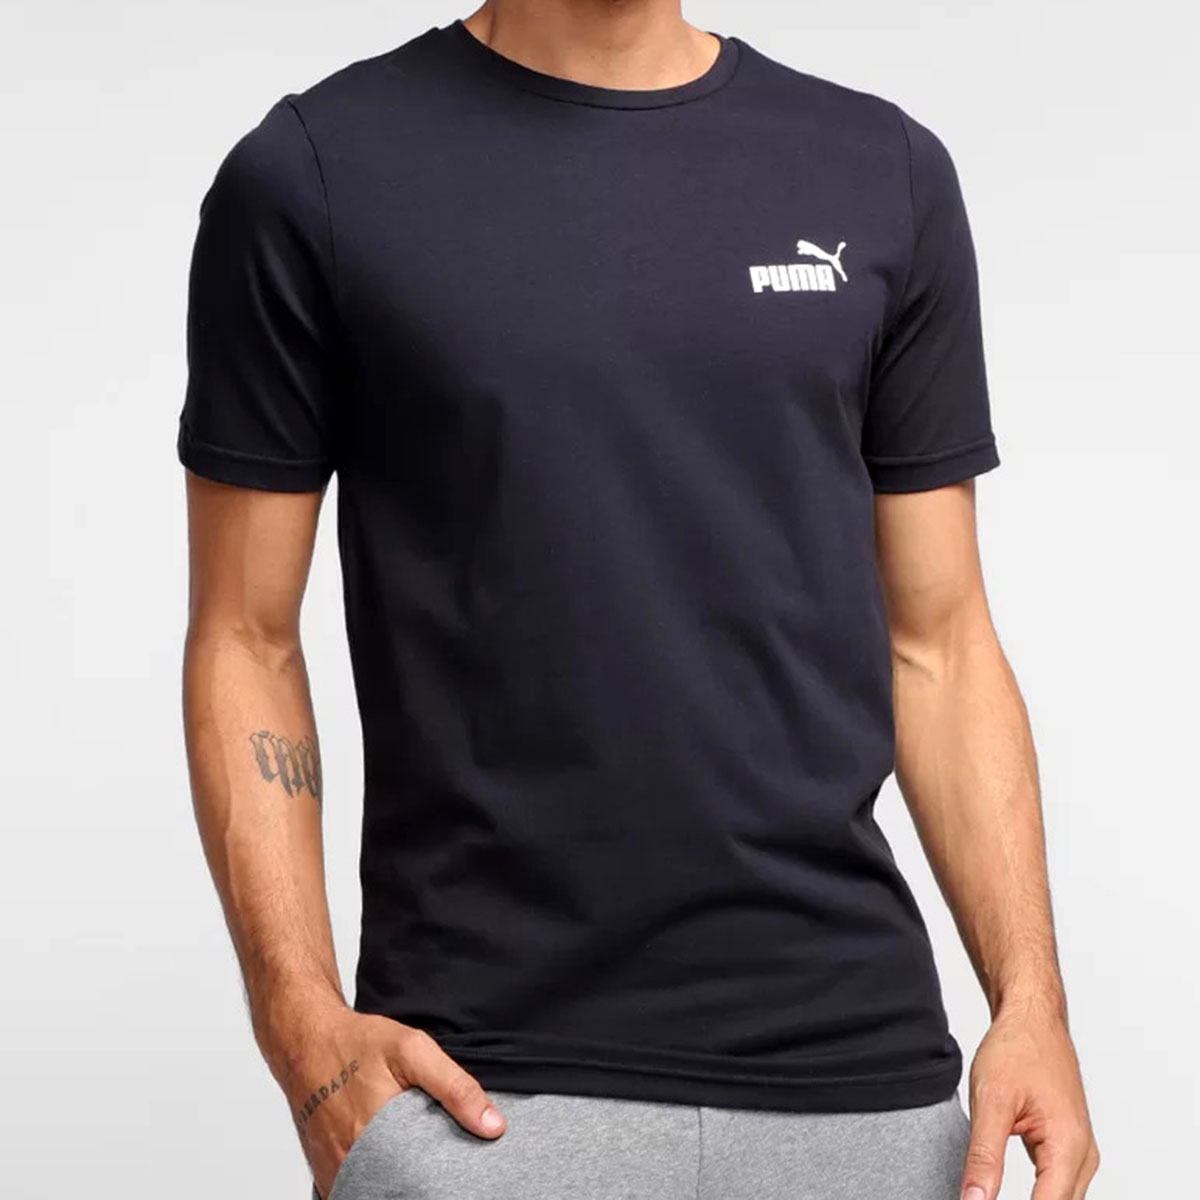 Camiseta Puma Active Preta - Compre Agora